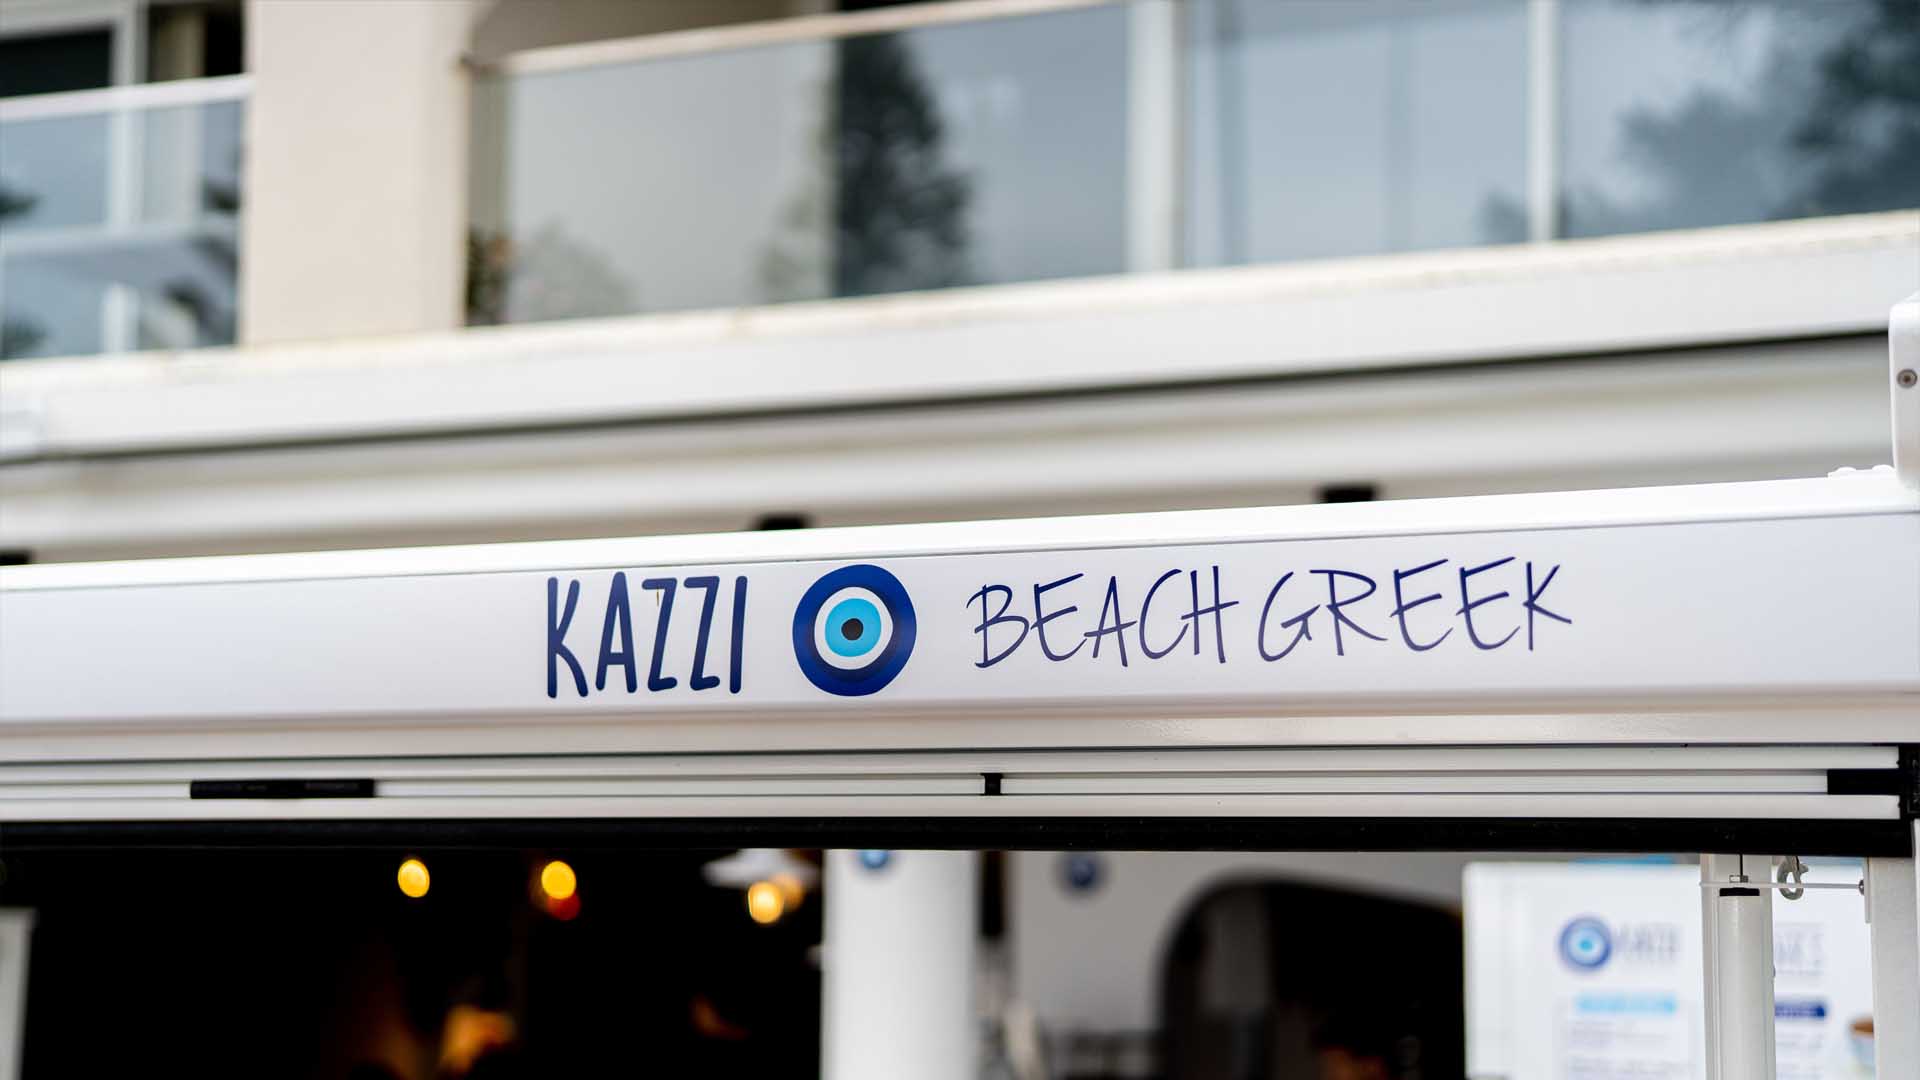 Kazzi Beach Greek